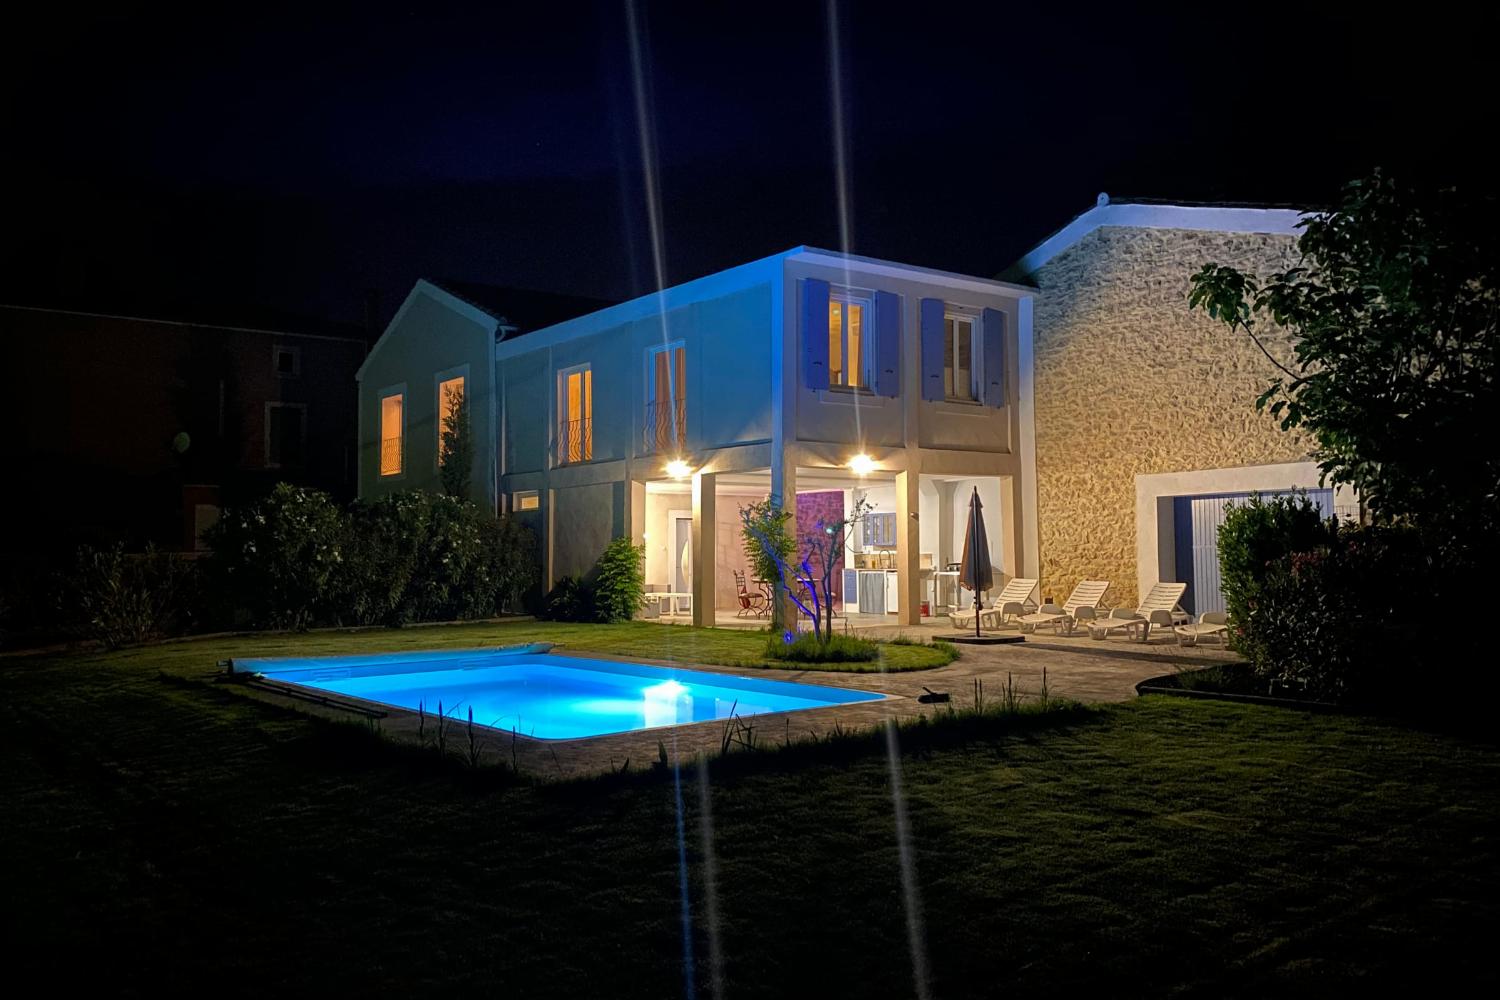 Maison de vacances dans le sud de la France avec piscine privée la nuit